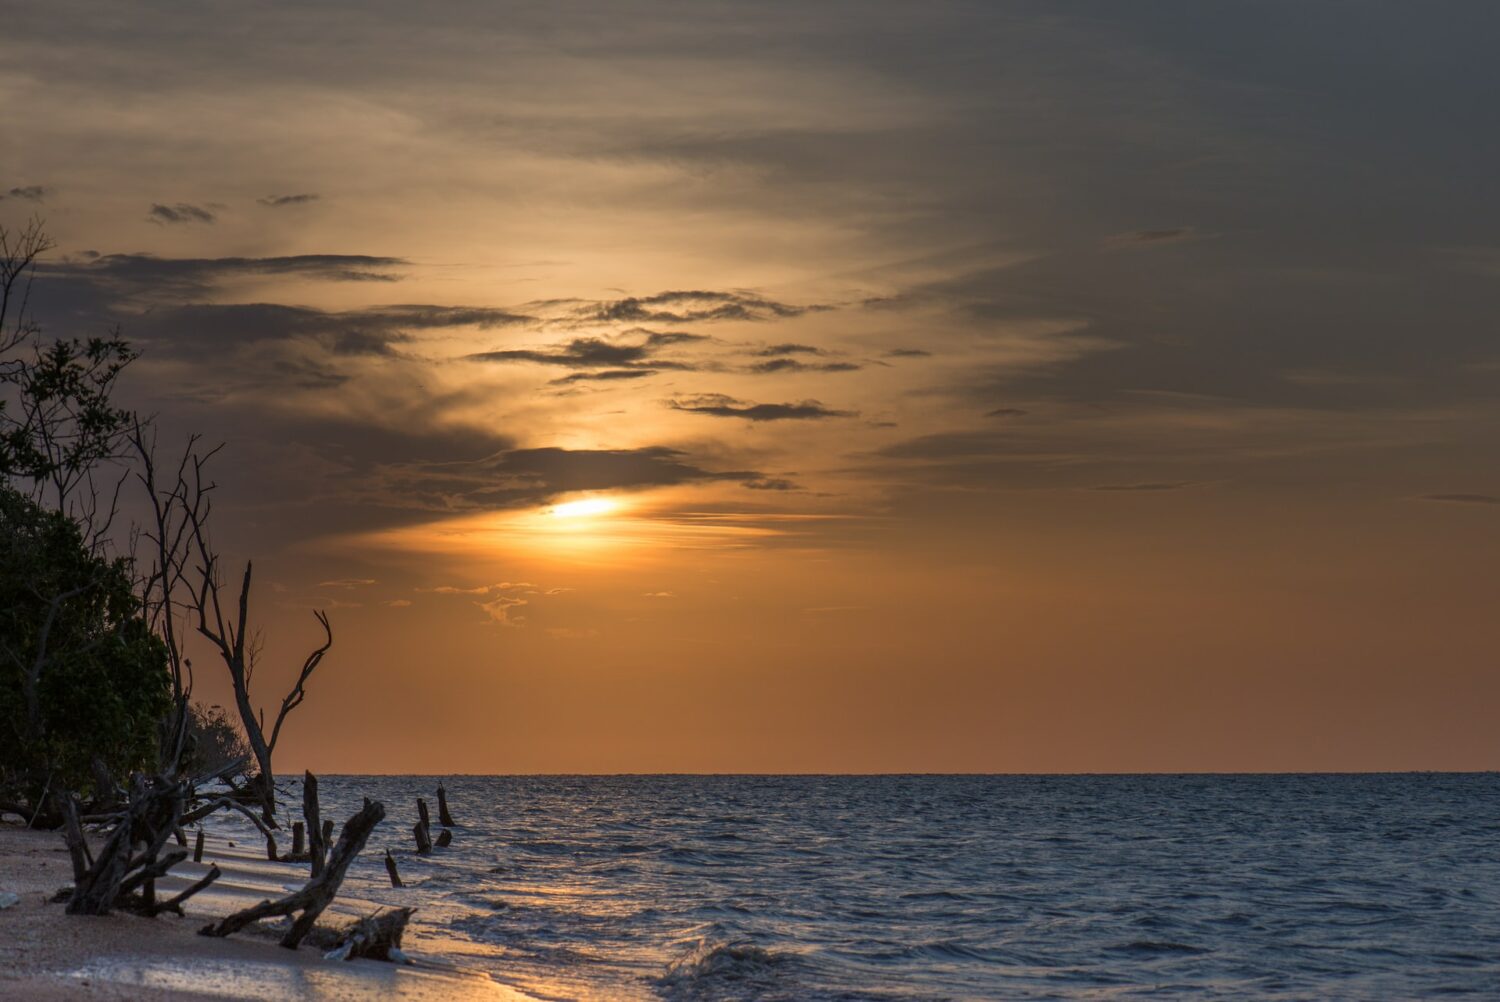 Imagem do mar e troncos na areia durante o pôr do sol, ilustrando post chip celular Suriname.